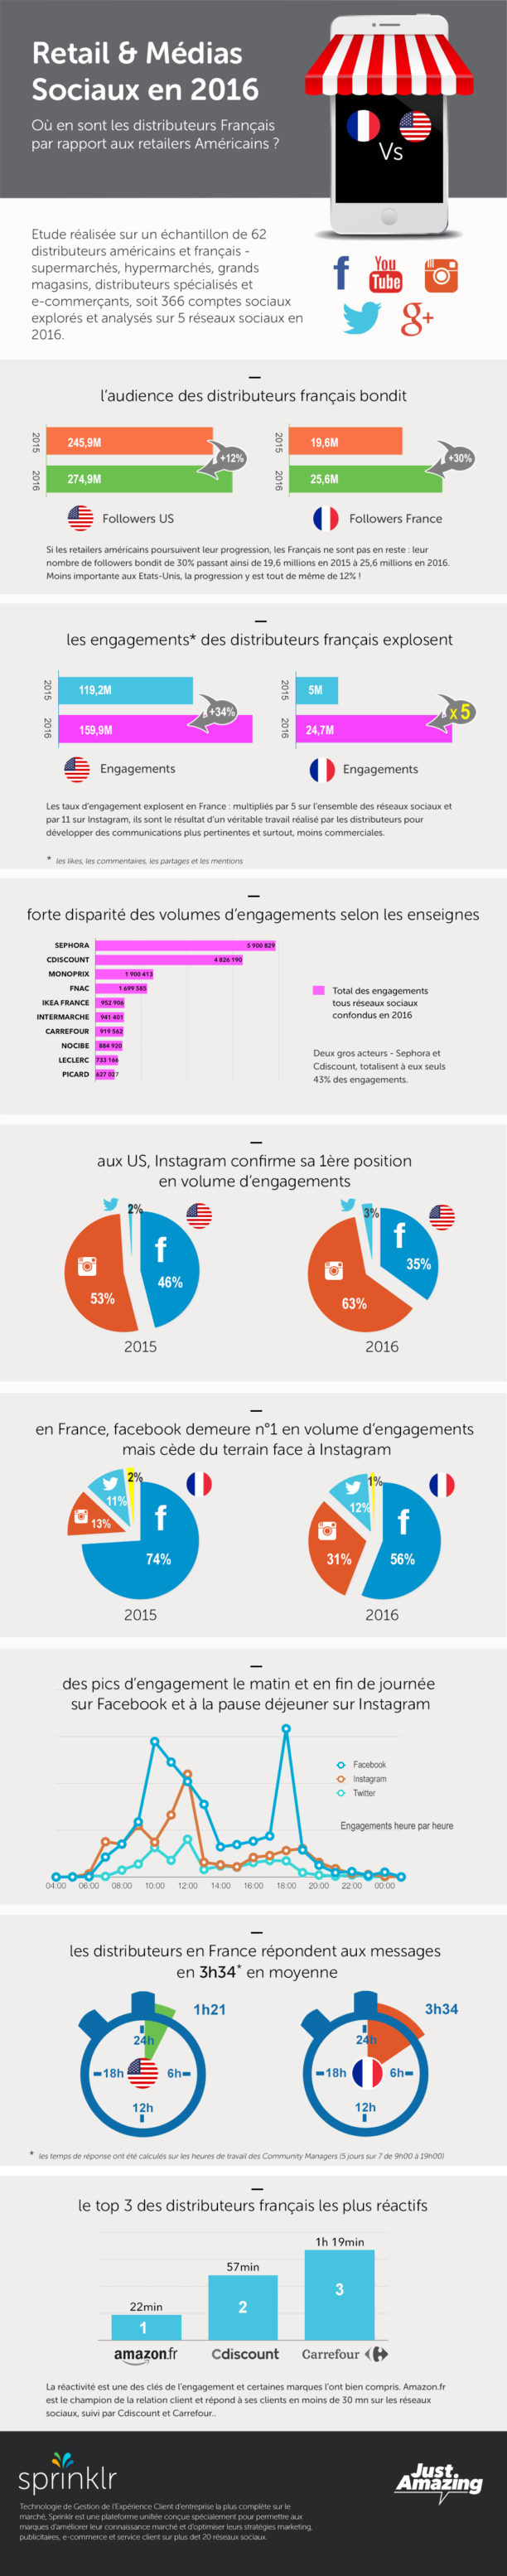 Les retailers français et les réseaux sociaux